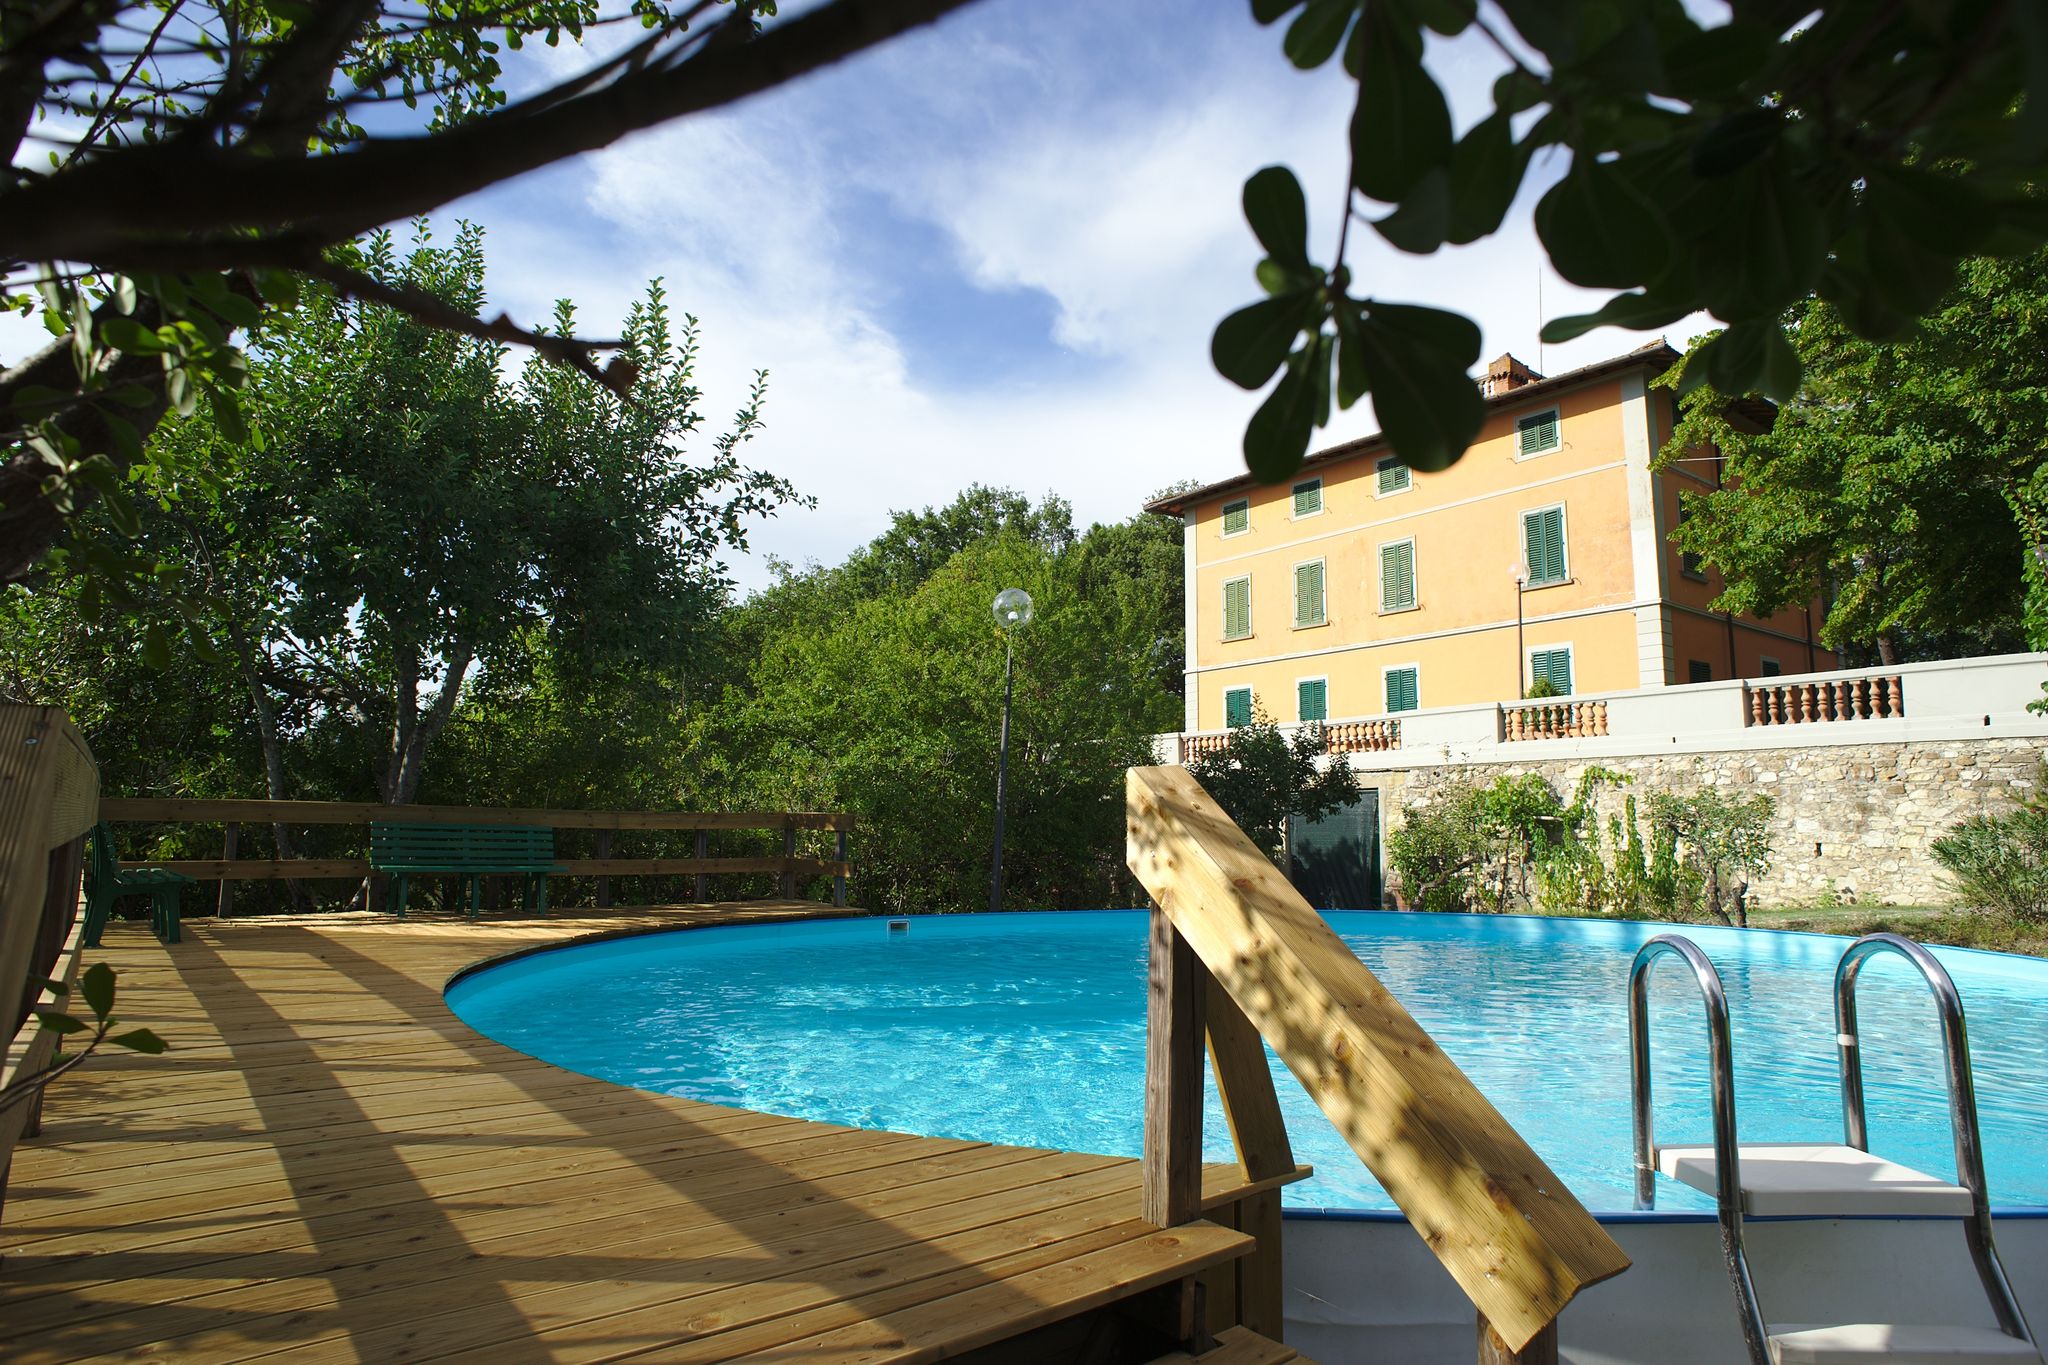 Maison de vacances paisible avec piscine à Montefiridolfi